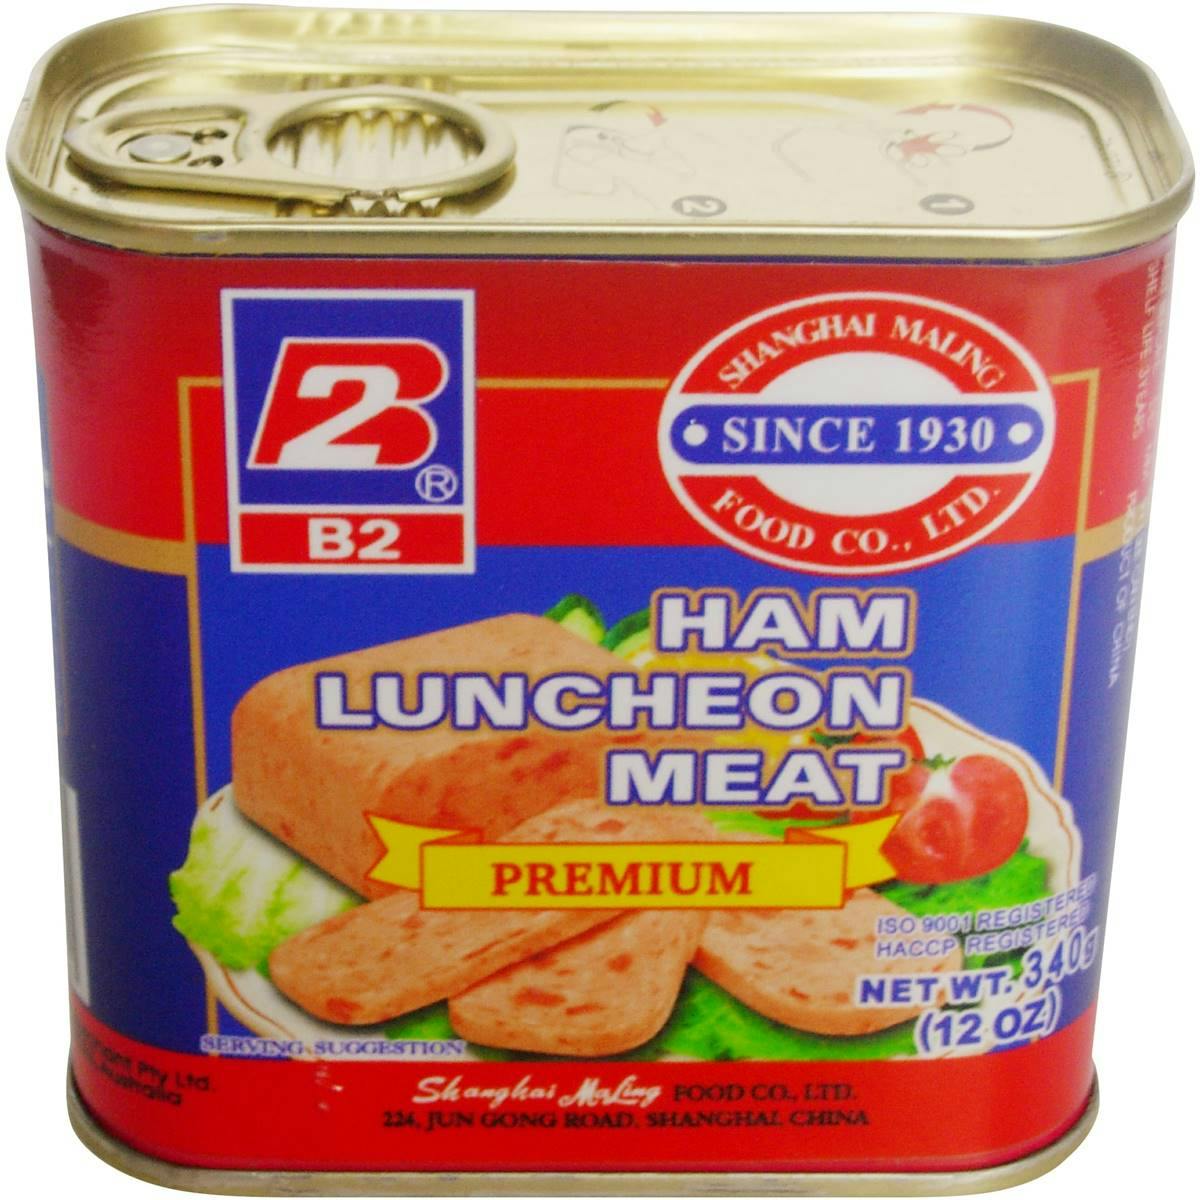 B2 Ham Luncheon Meat Premium